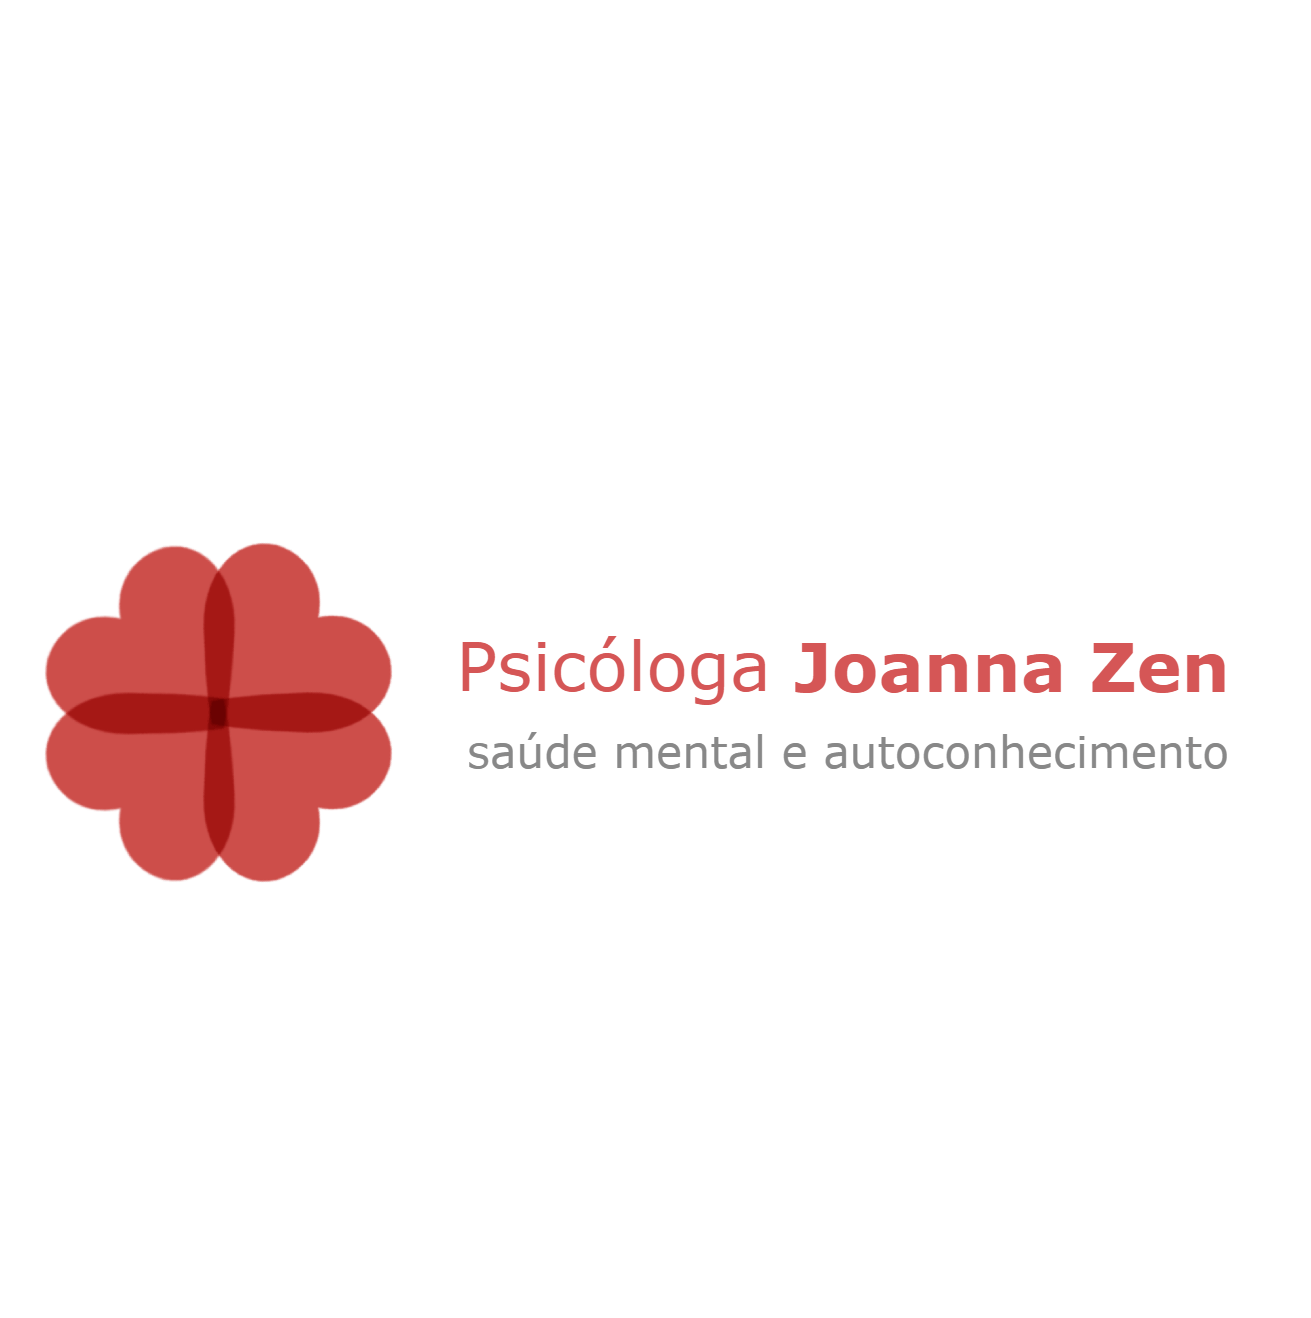 Psicóloga Joanna Zen